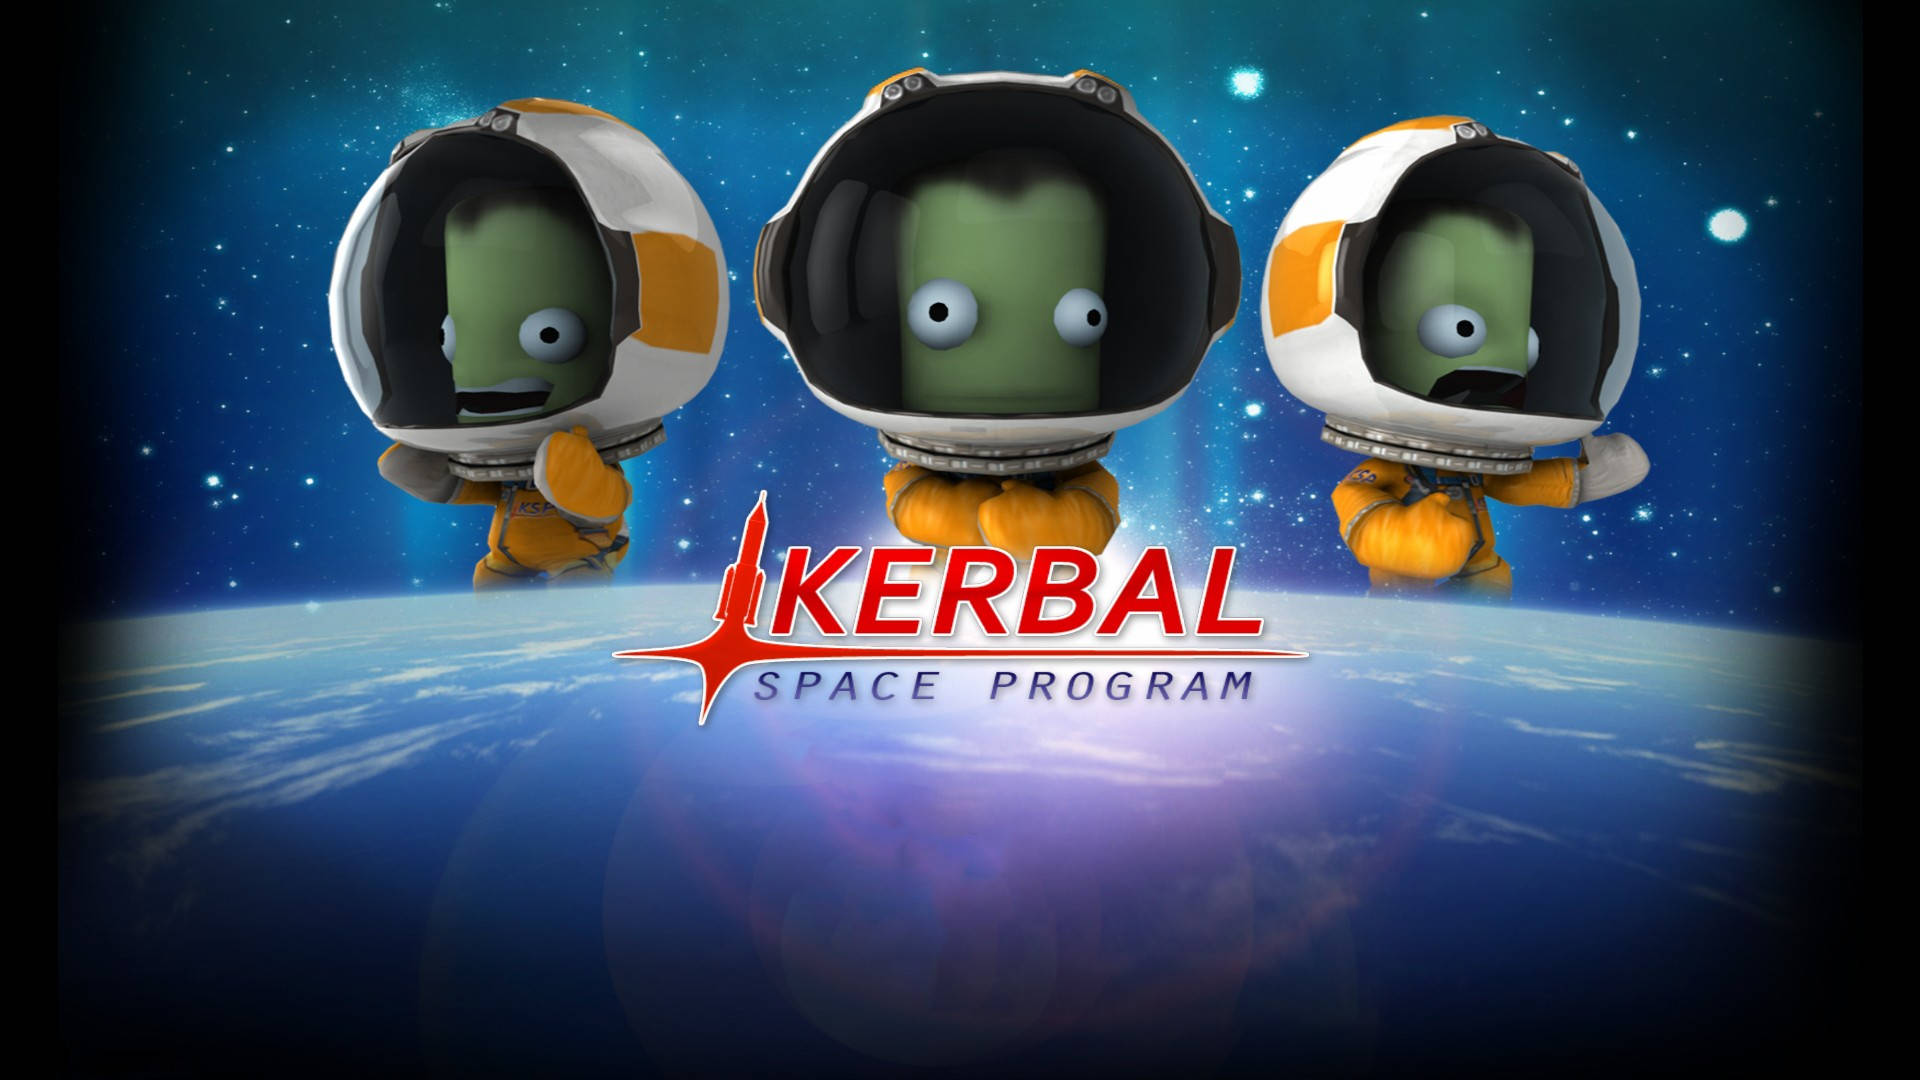 Kerbal Space Program Poster Wallpaper